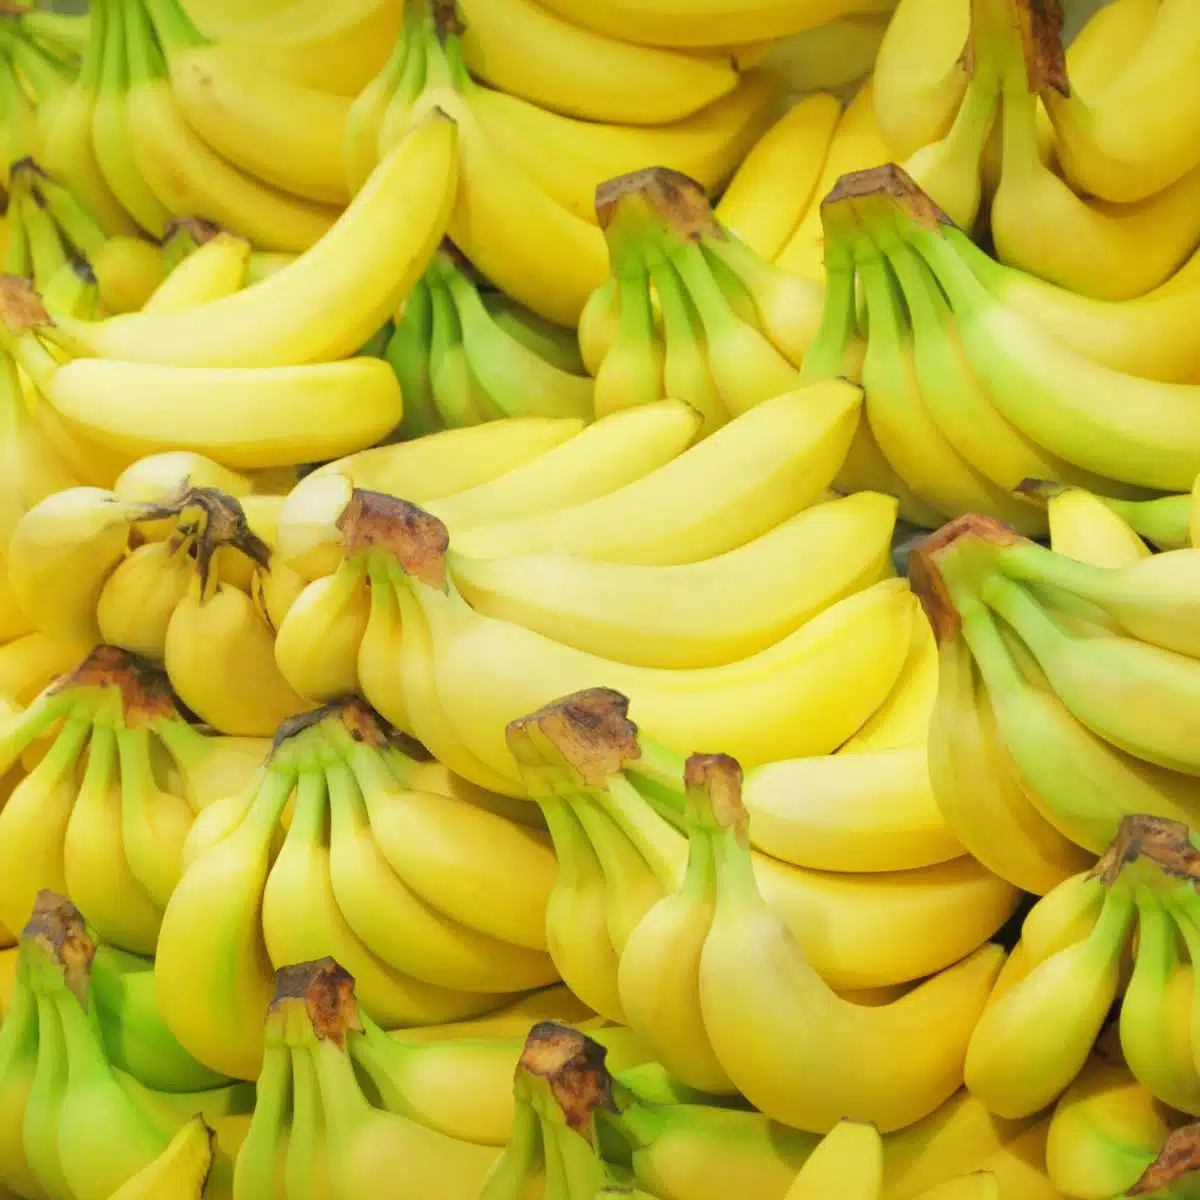 Kvadratna slika koja prikazuje grozdove banana.